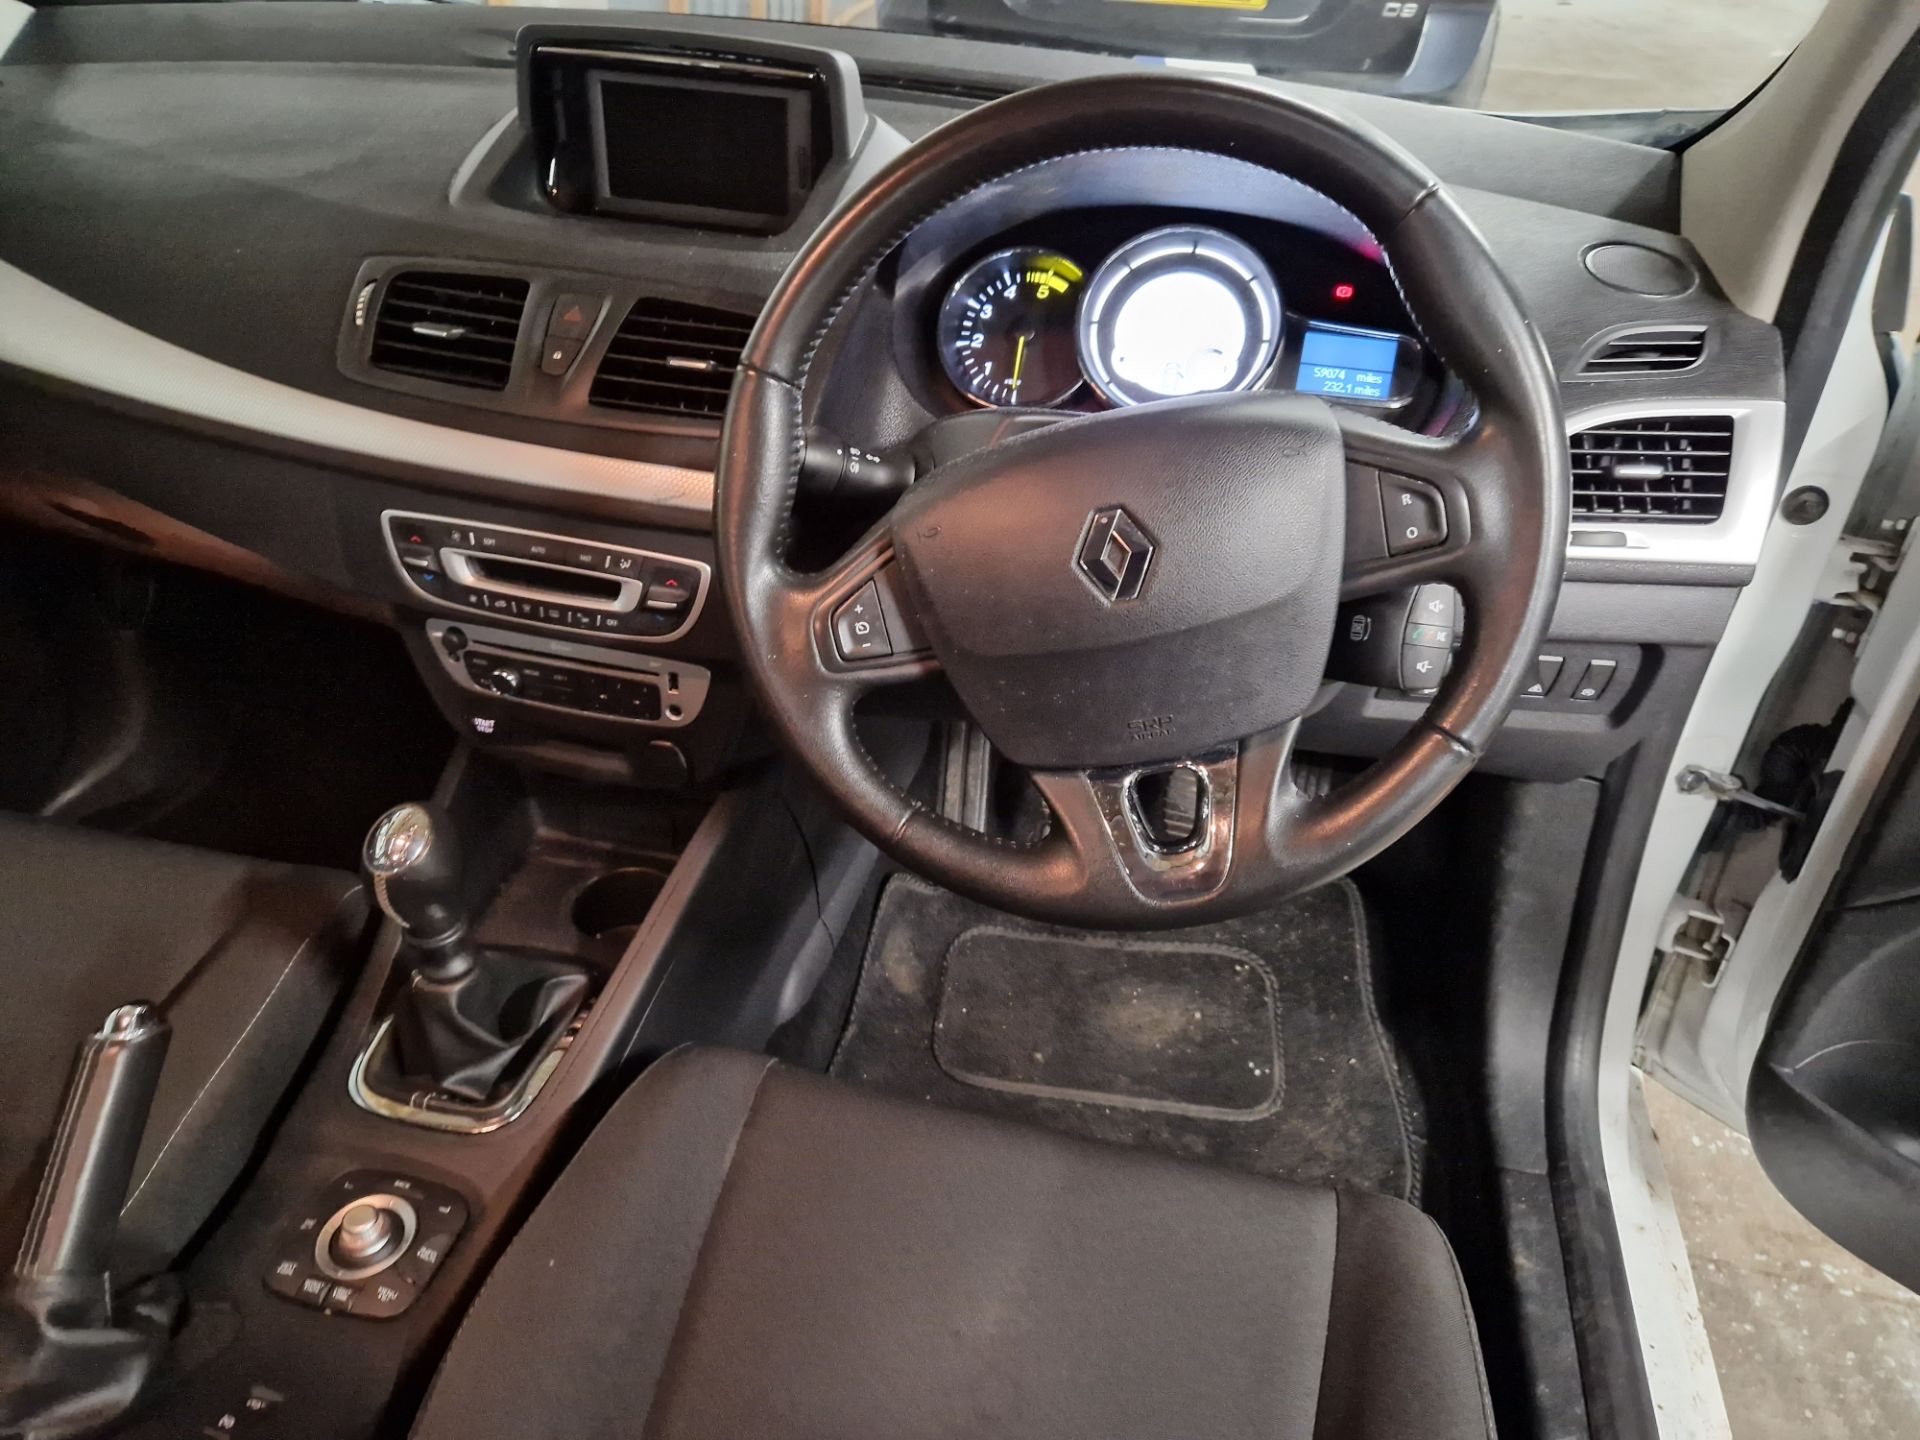 Renault Megane 1.5 dCi Dynamique TomTom Energy 5dr Diesel Hatchback, Registration No. SC14 LWK, - Bild 6 aus 8